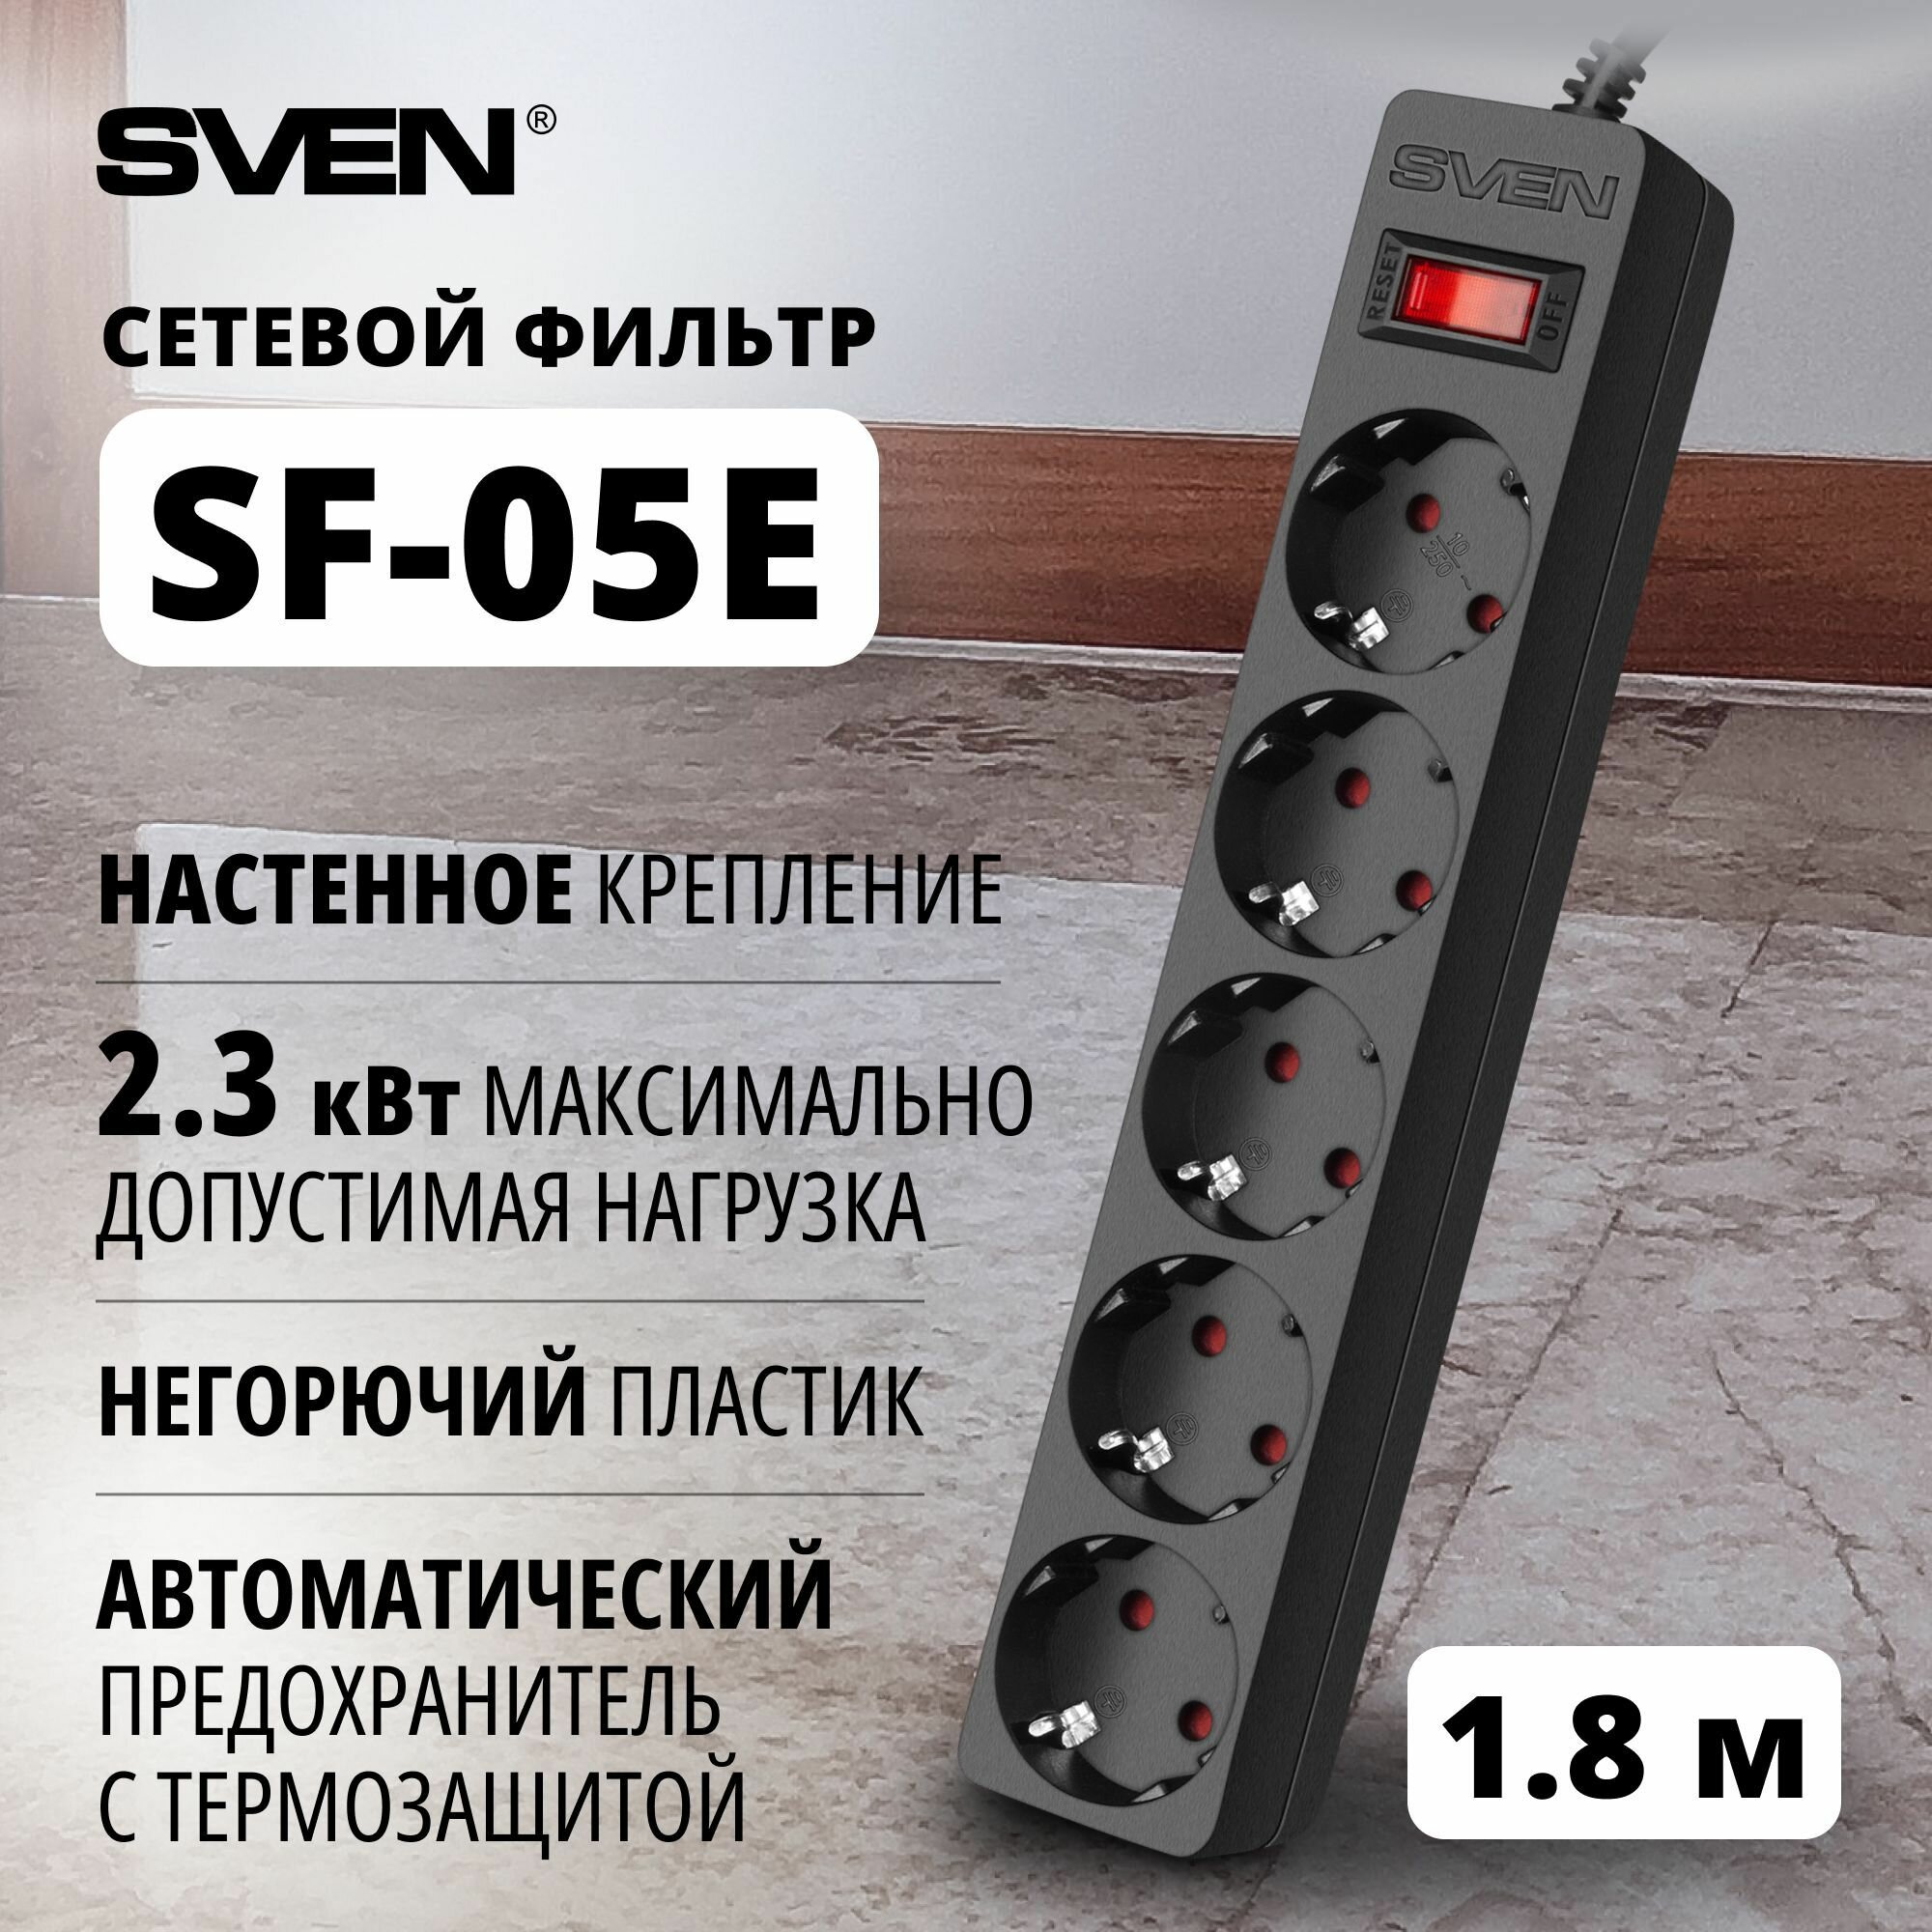 Сетевой фильтр Sven SF-05E 5 евро розеток, 1,8 м черный, цветная коробка